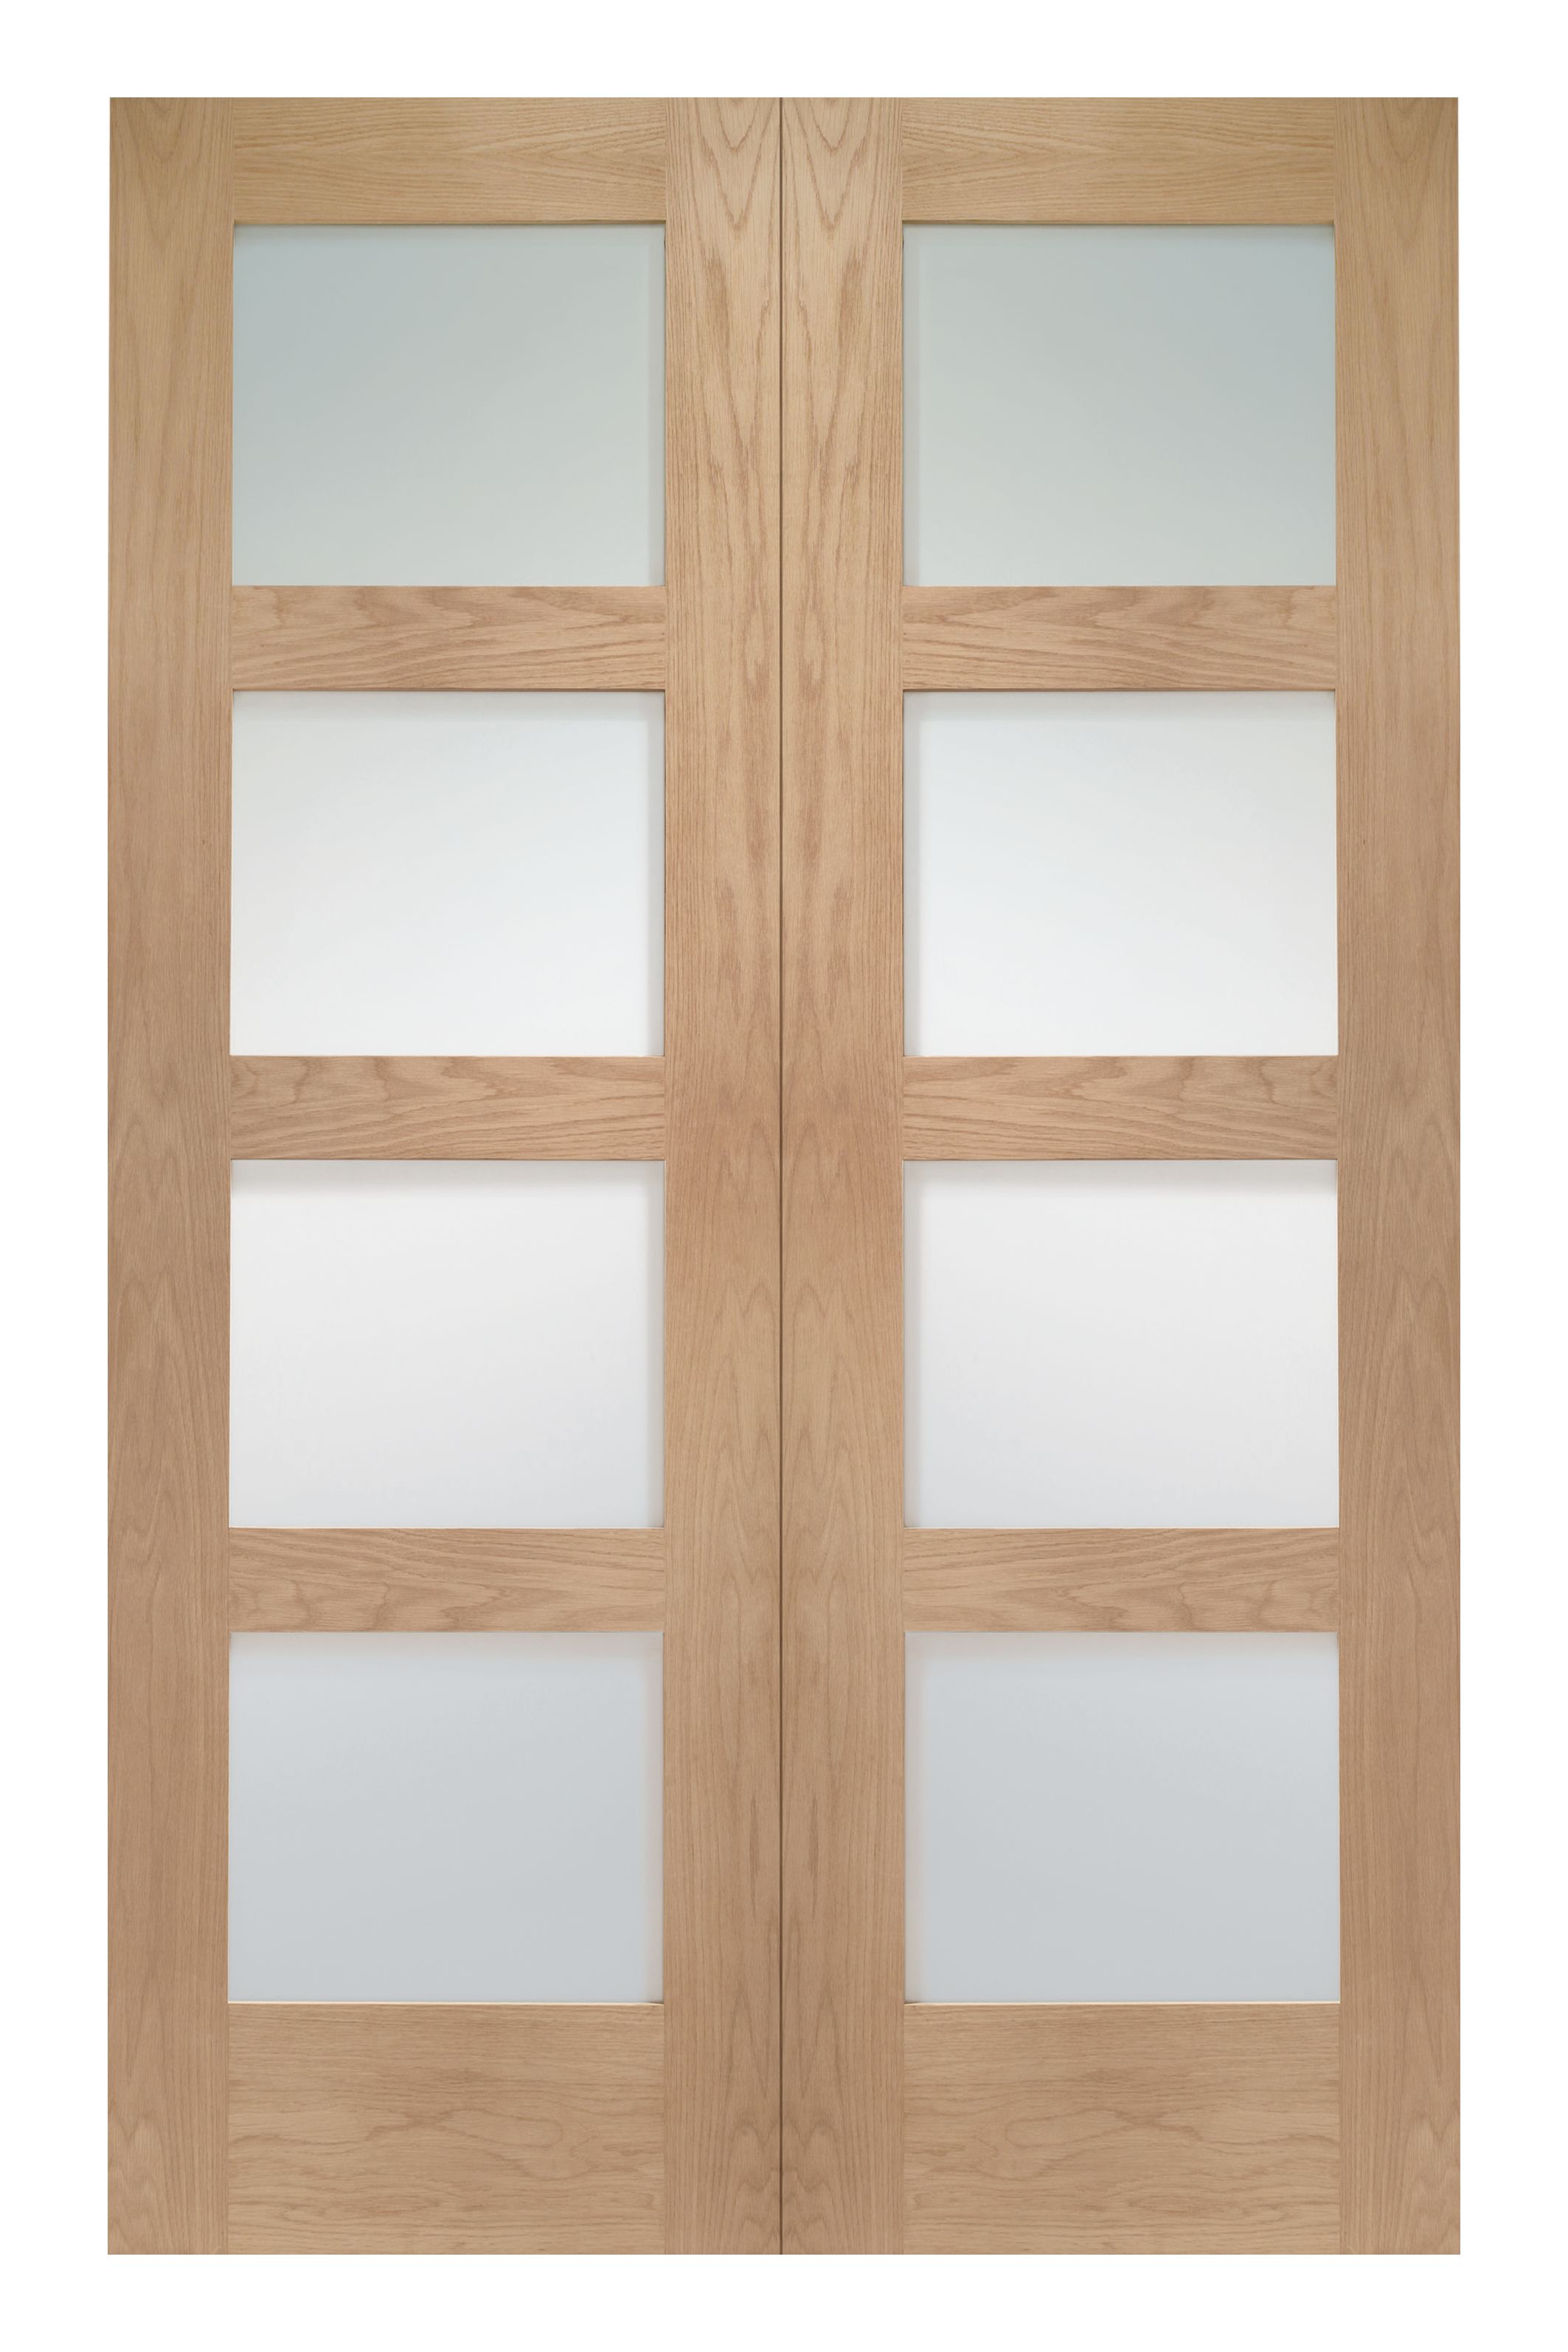 Image of Wickes Marlow Fully Glazed Oak 4 Panel Rebated Internal Door Pair - 1981 x 1372mm